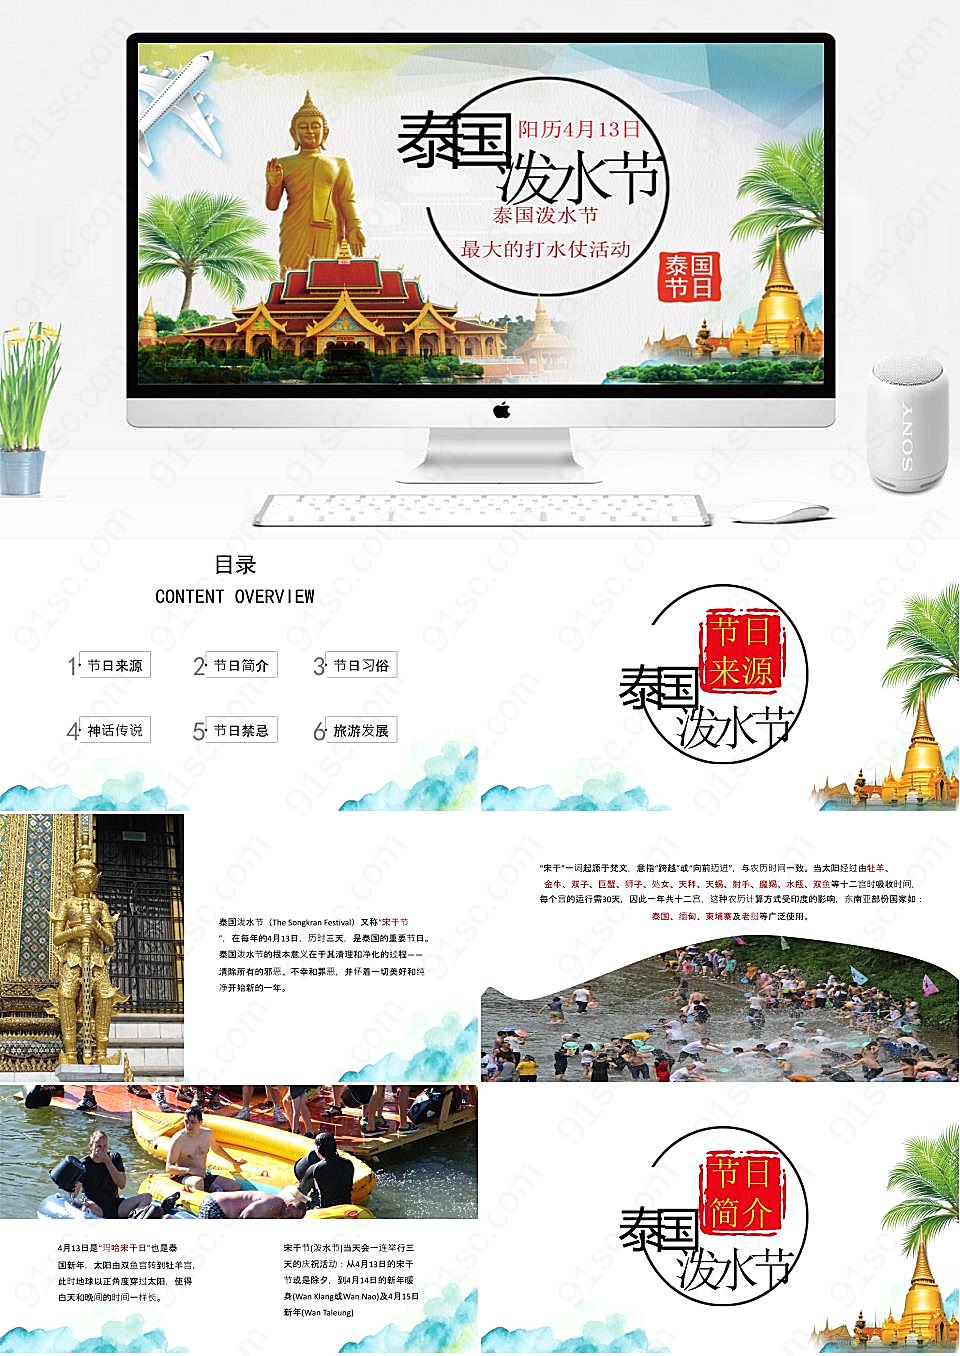 泰国泼水节的魅力旅游攻略与PPT动态模板的独特展示旅游旅行PPT模板下载